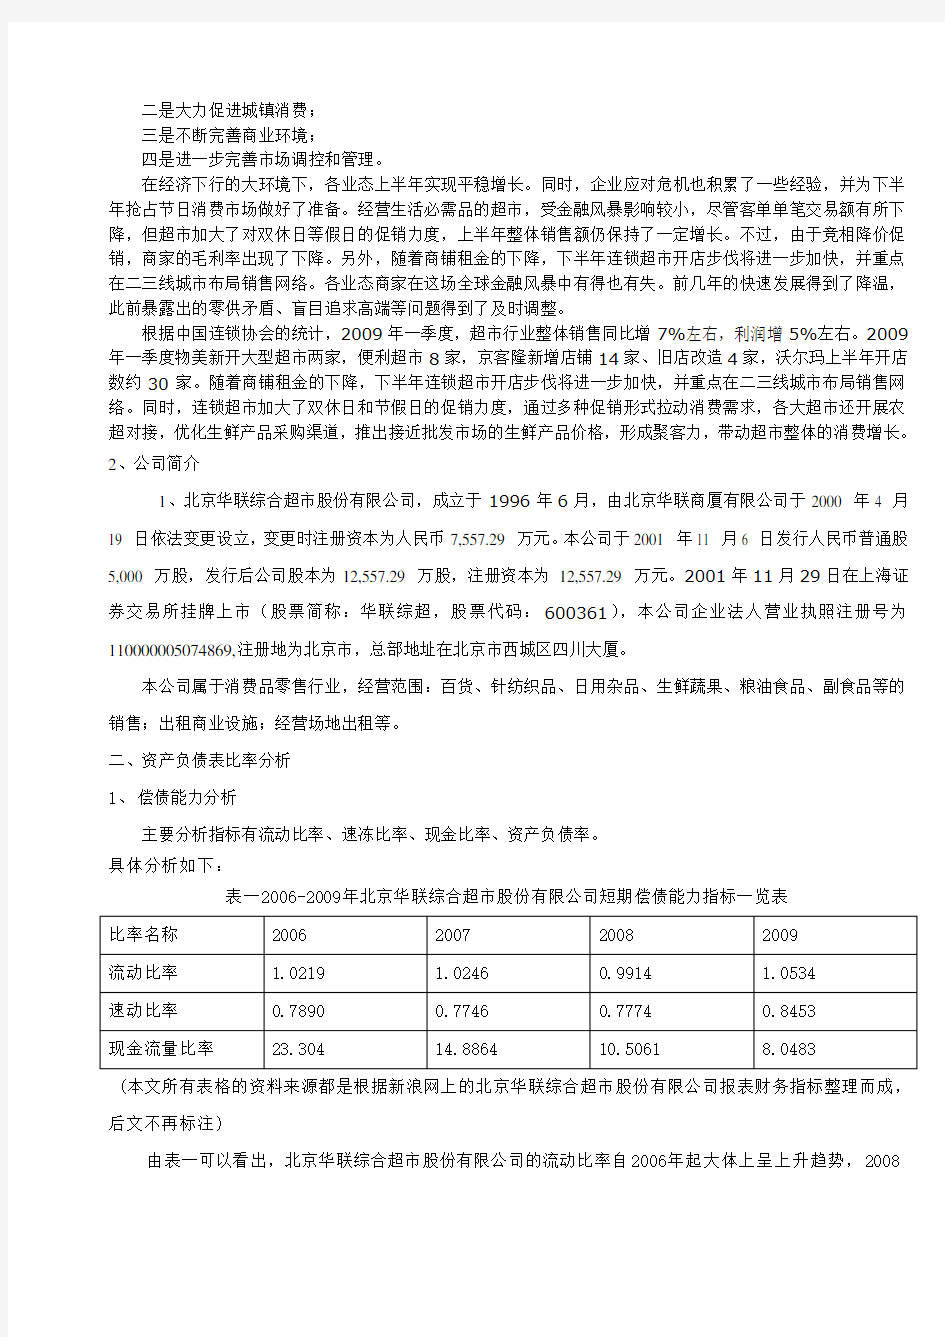 北京华联综合超市股份有限公司财务分析报告